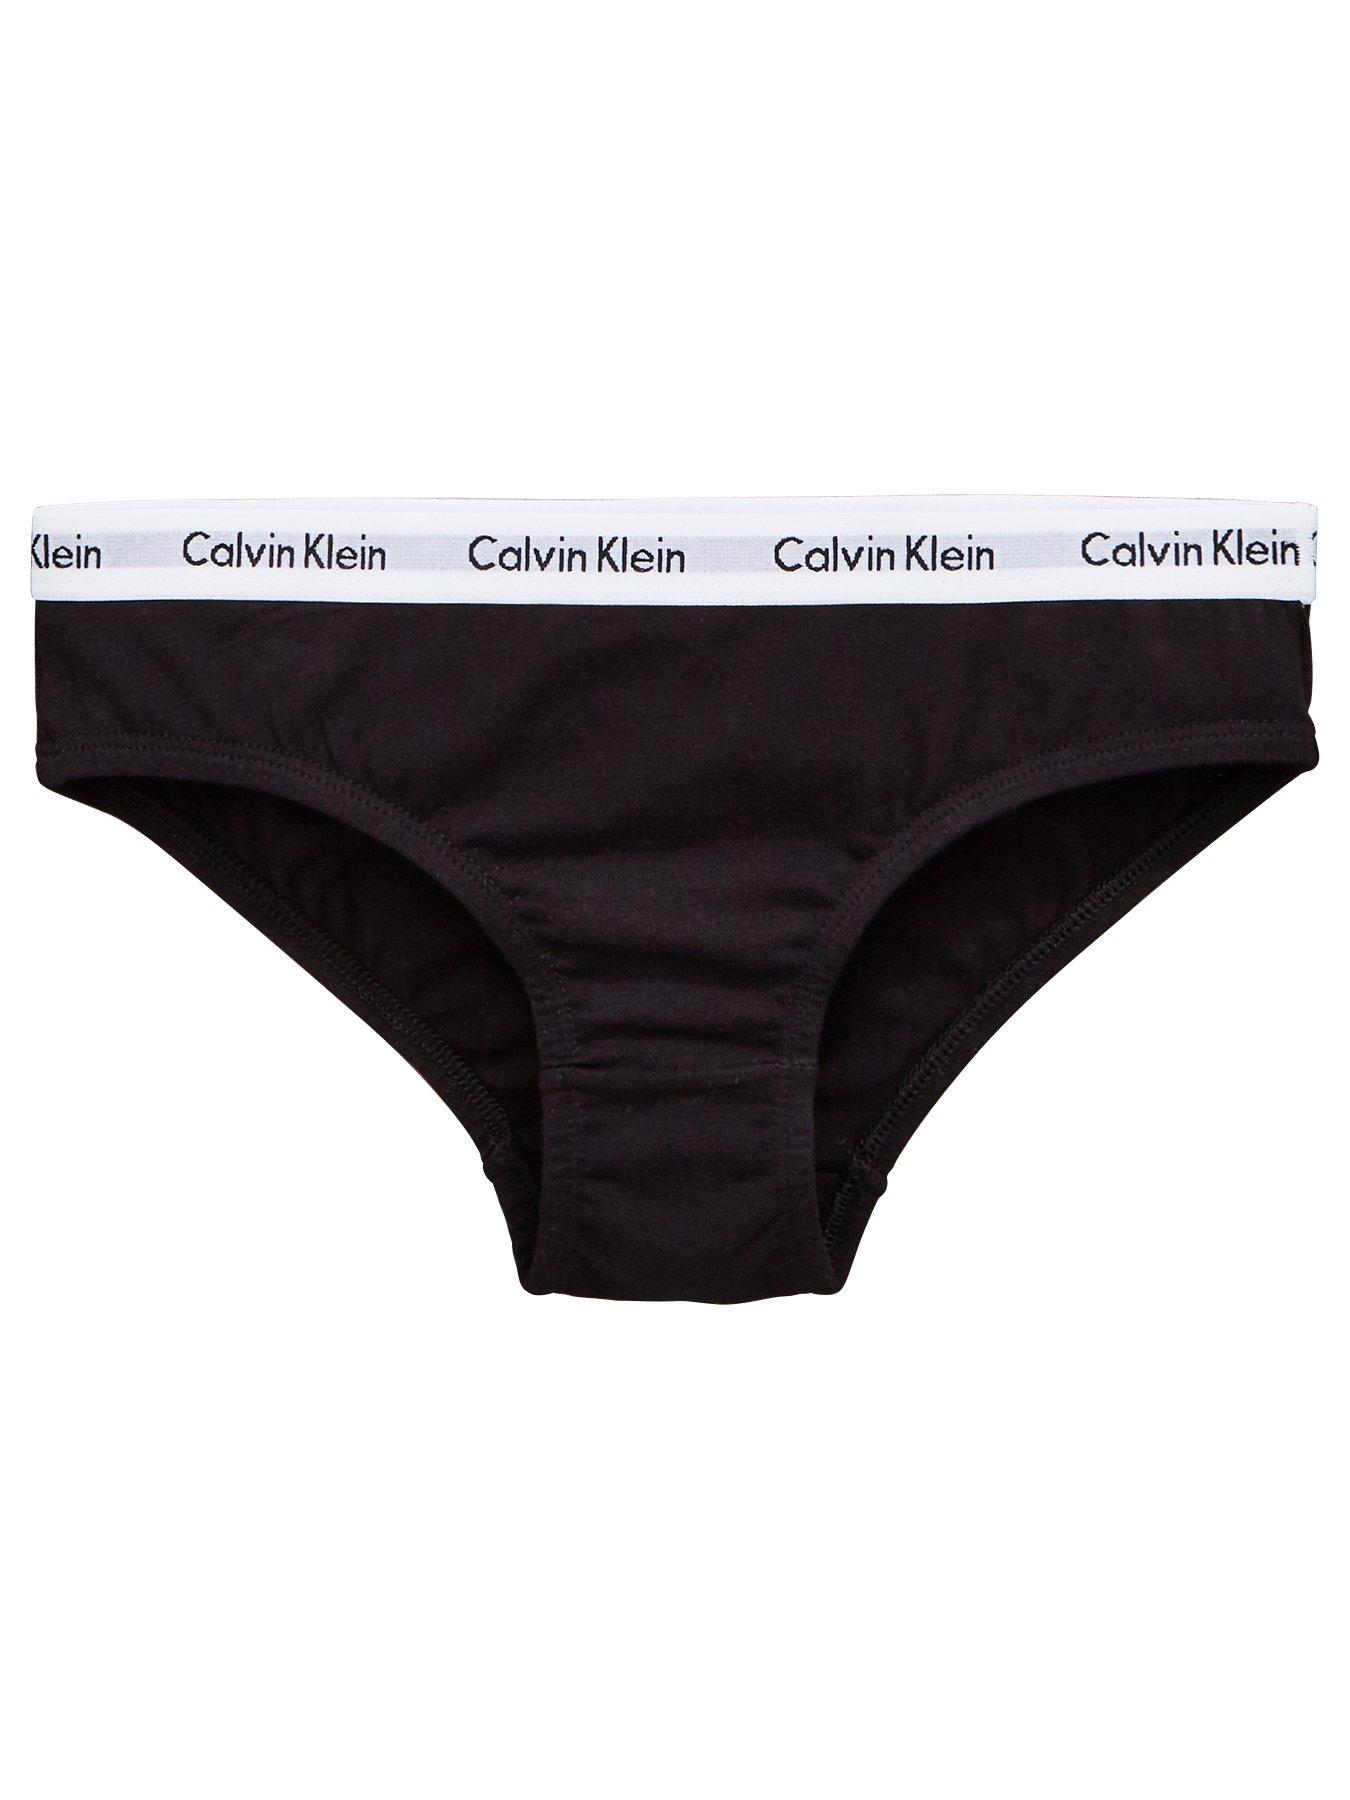 Calvin Klein Girls Comfort Stretch Bikini Underwear 6-Pack (Small